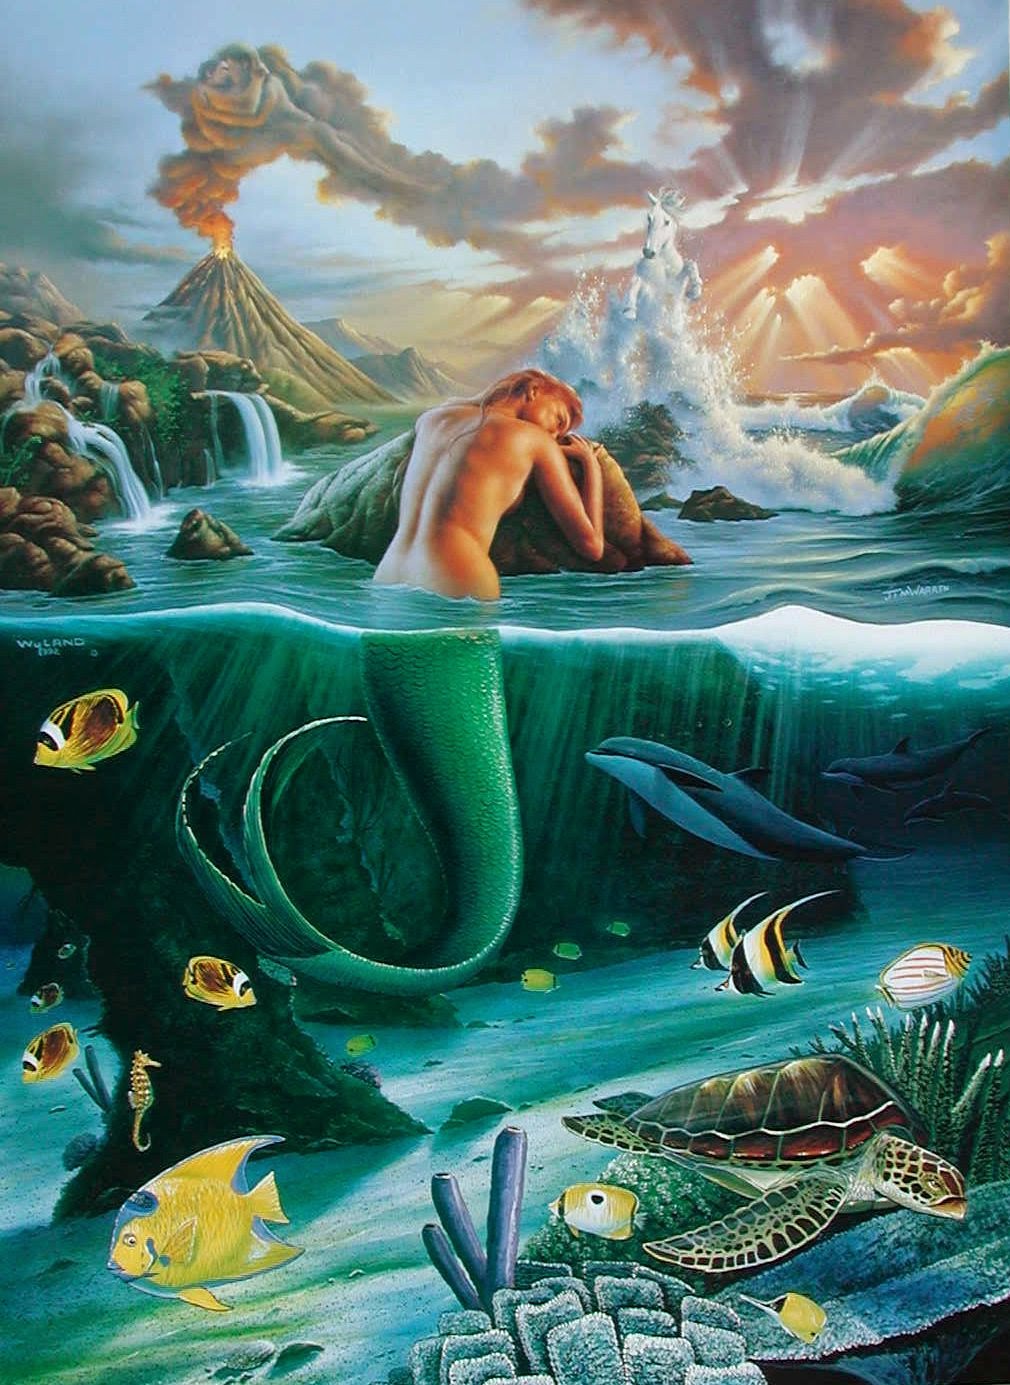 Fantasy Mermaid Art by Jim Warren